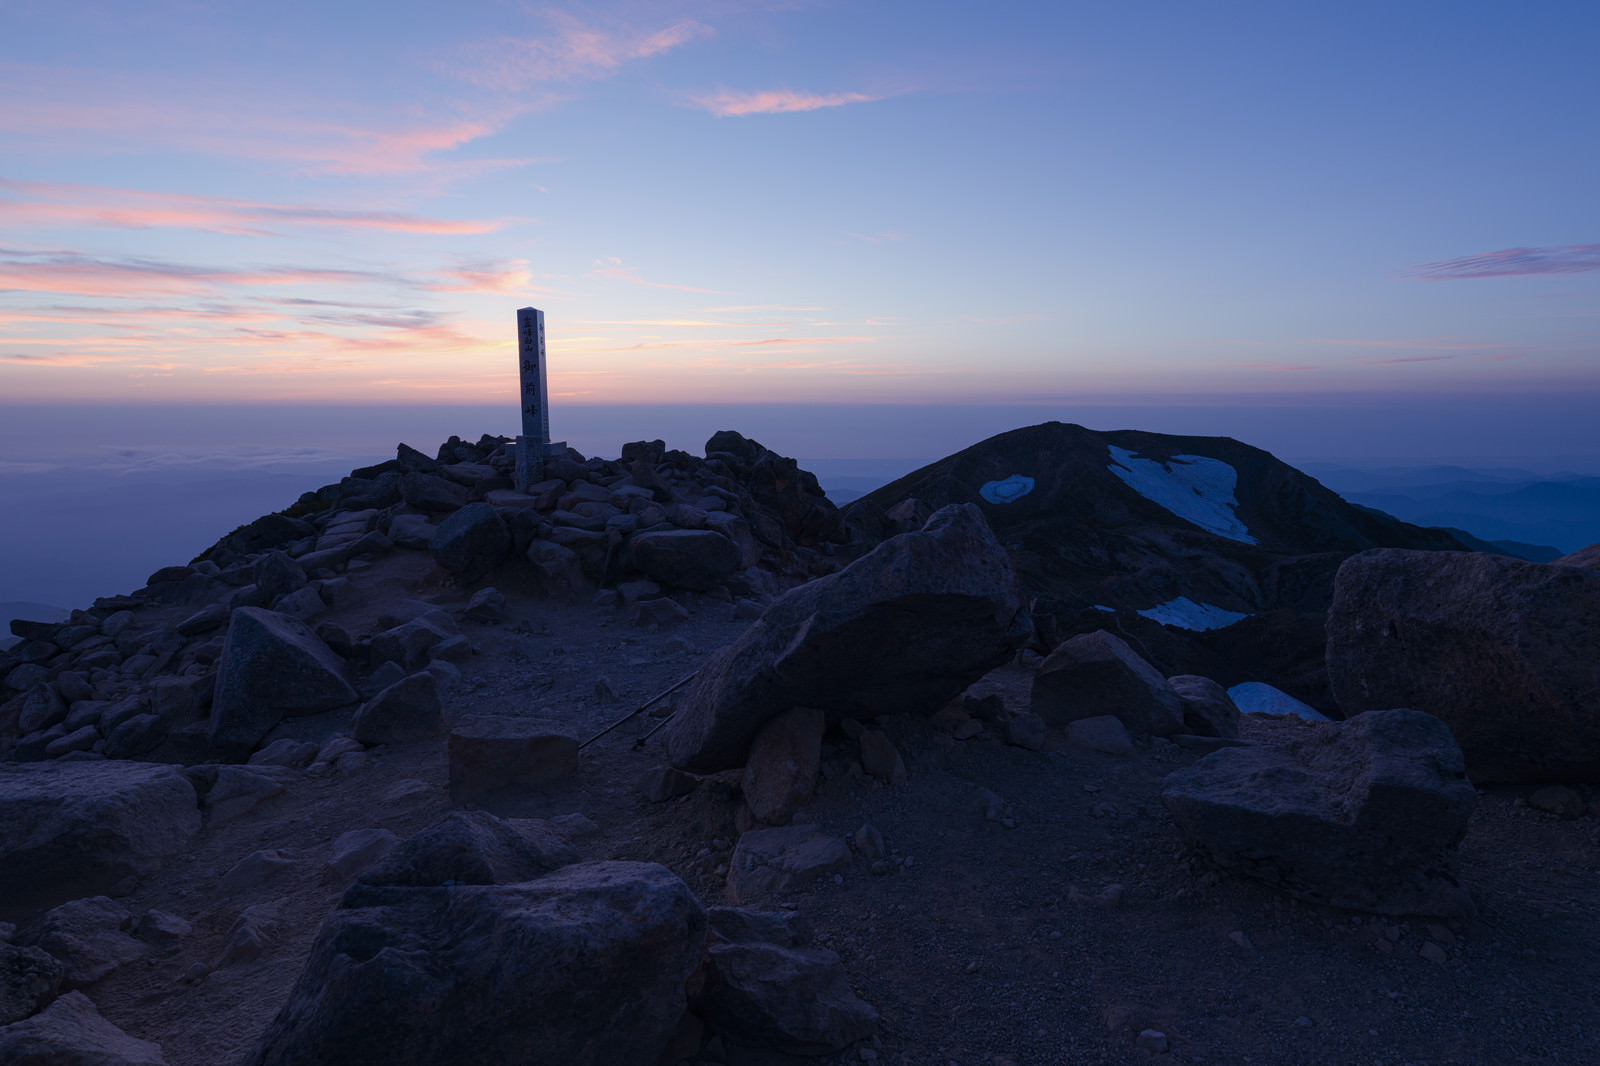 「夕日が沈んだ後の白山山頂 | フリー素材のぱくたそ」の写真